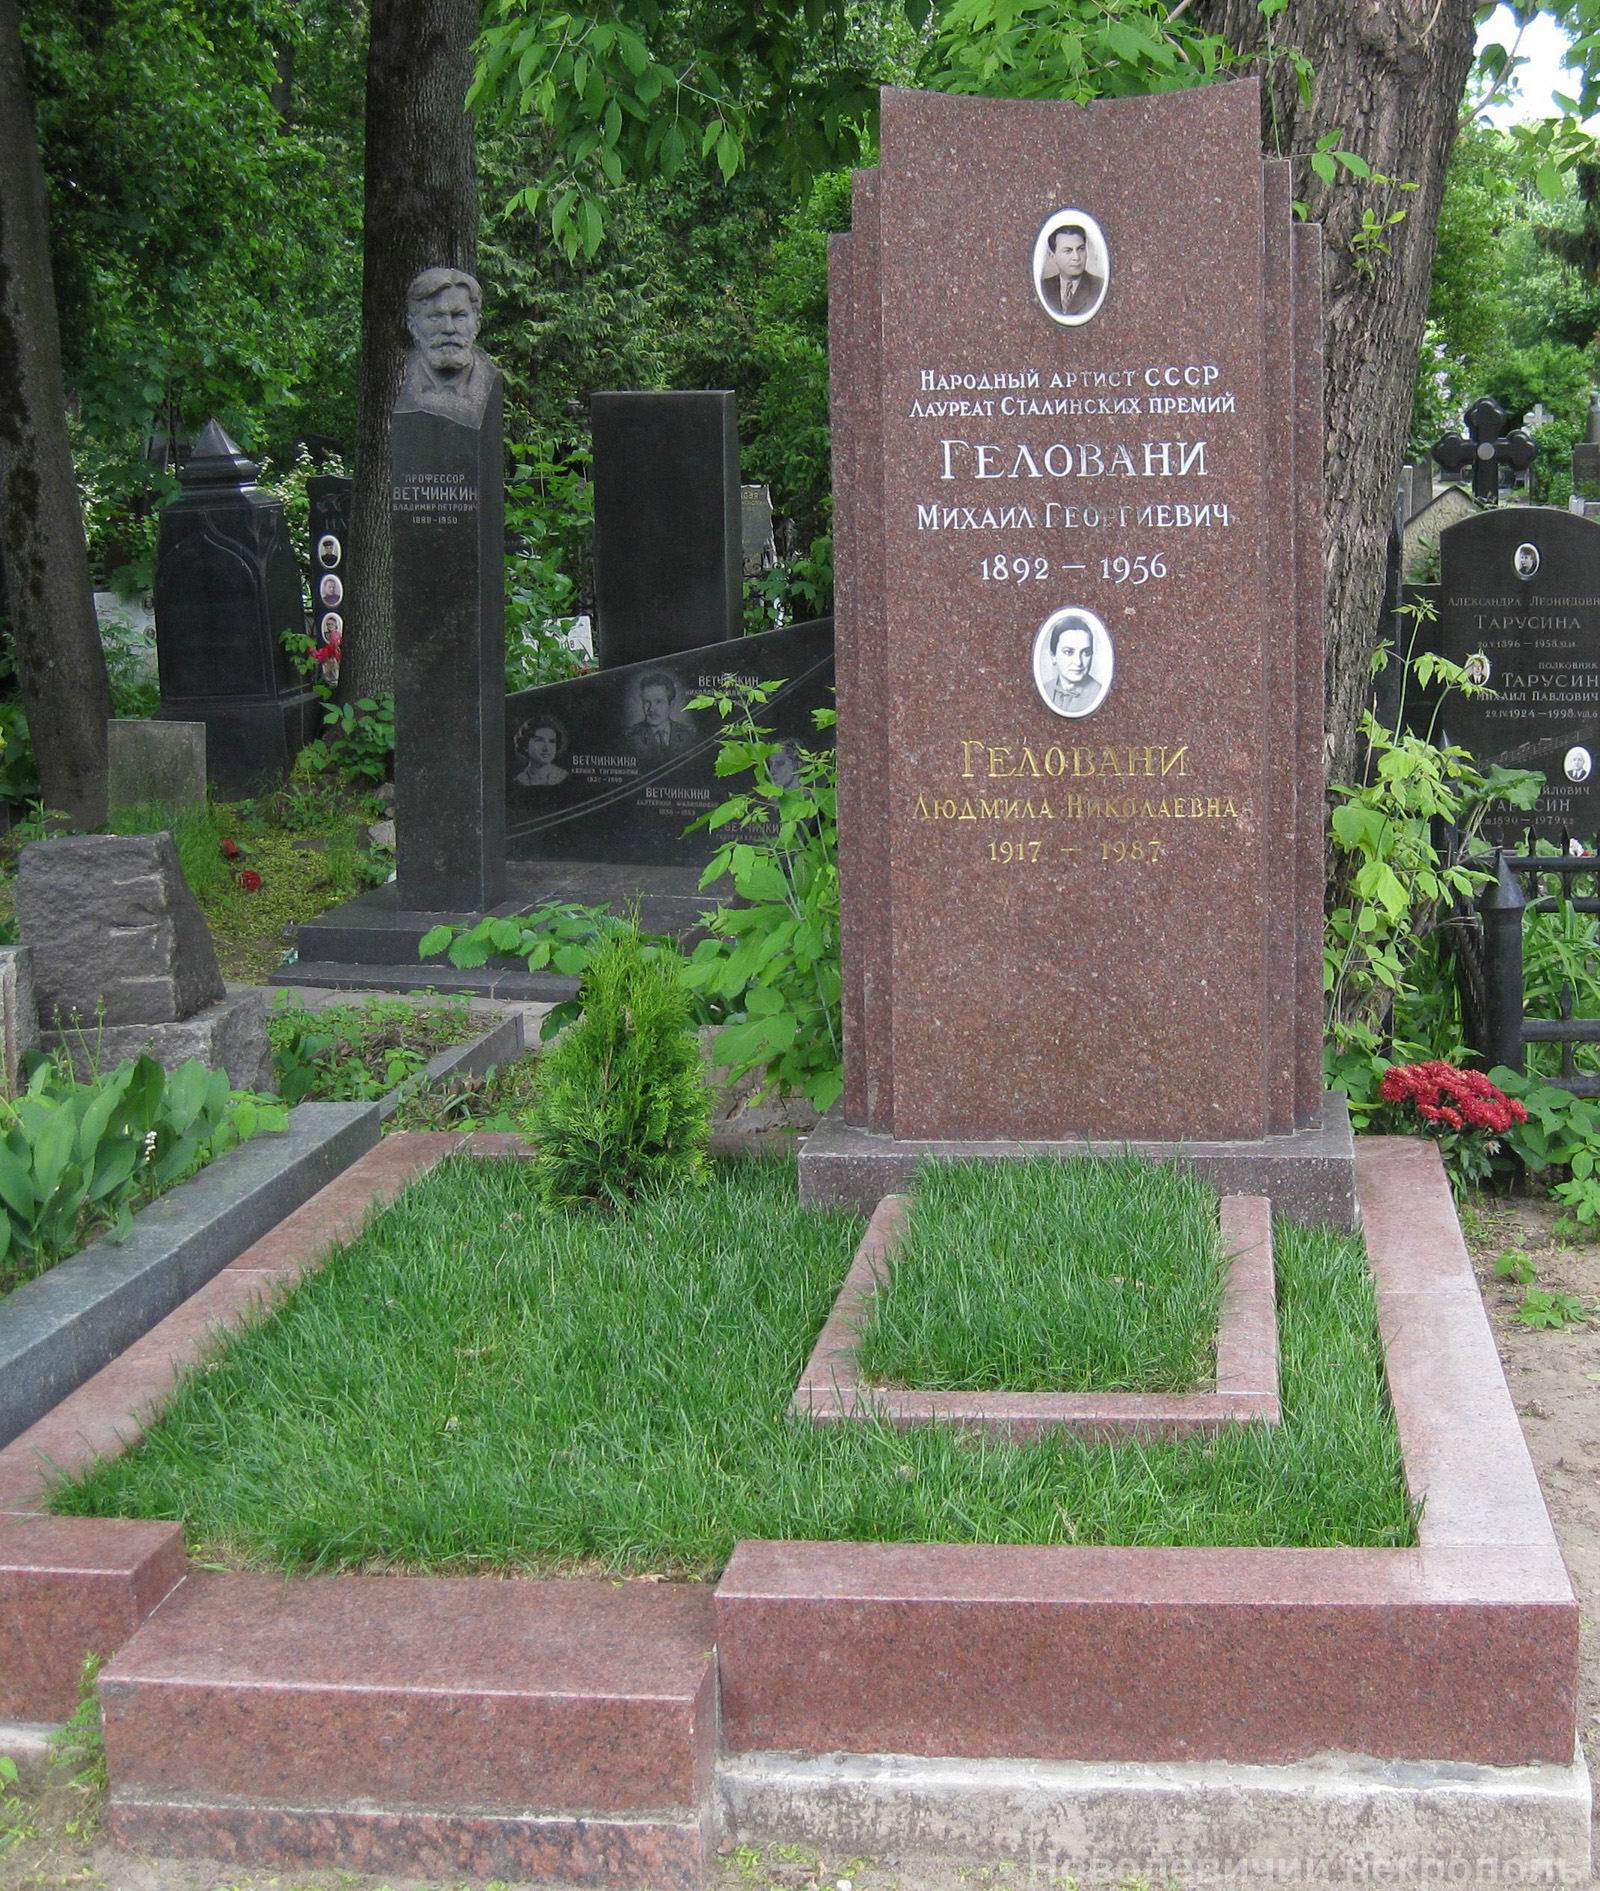 Памятник на могиле Геловани М.Г. (1892-1956), на Новодевичьем кладбище (3-58-2).